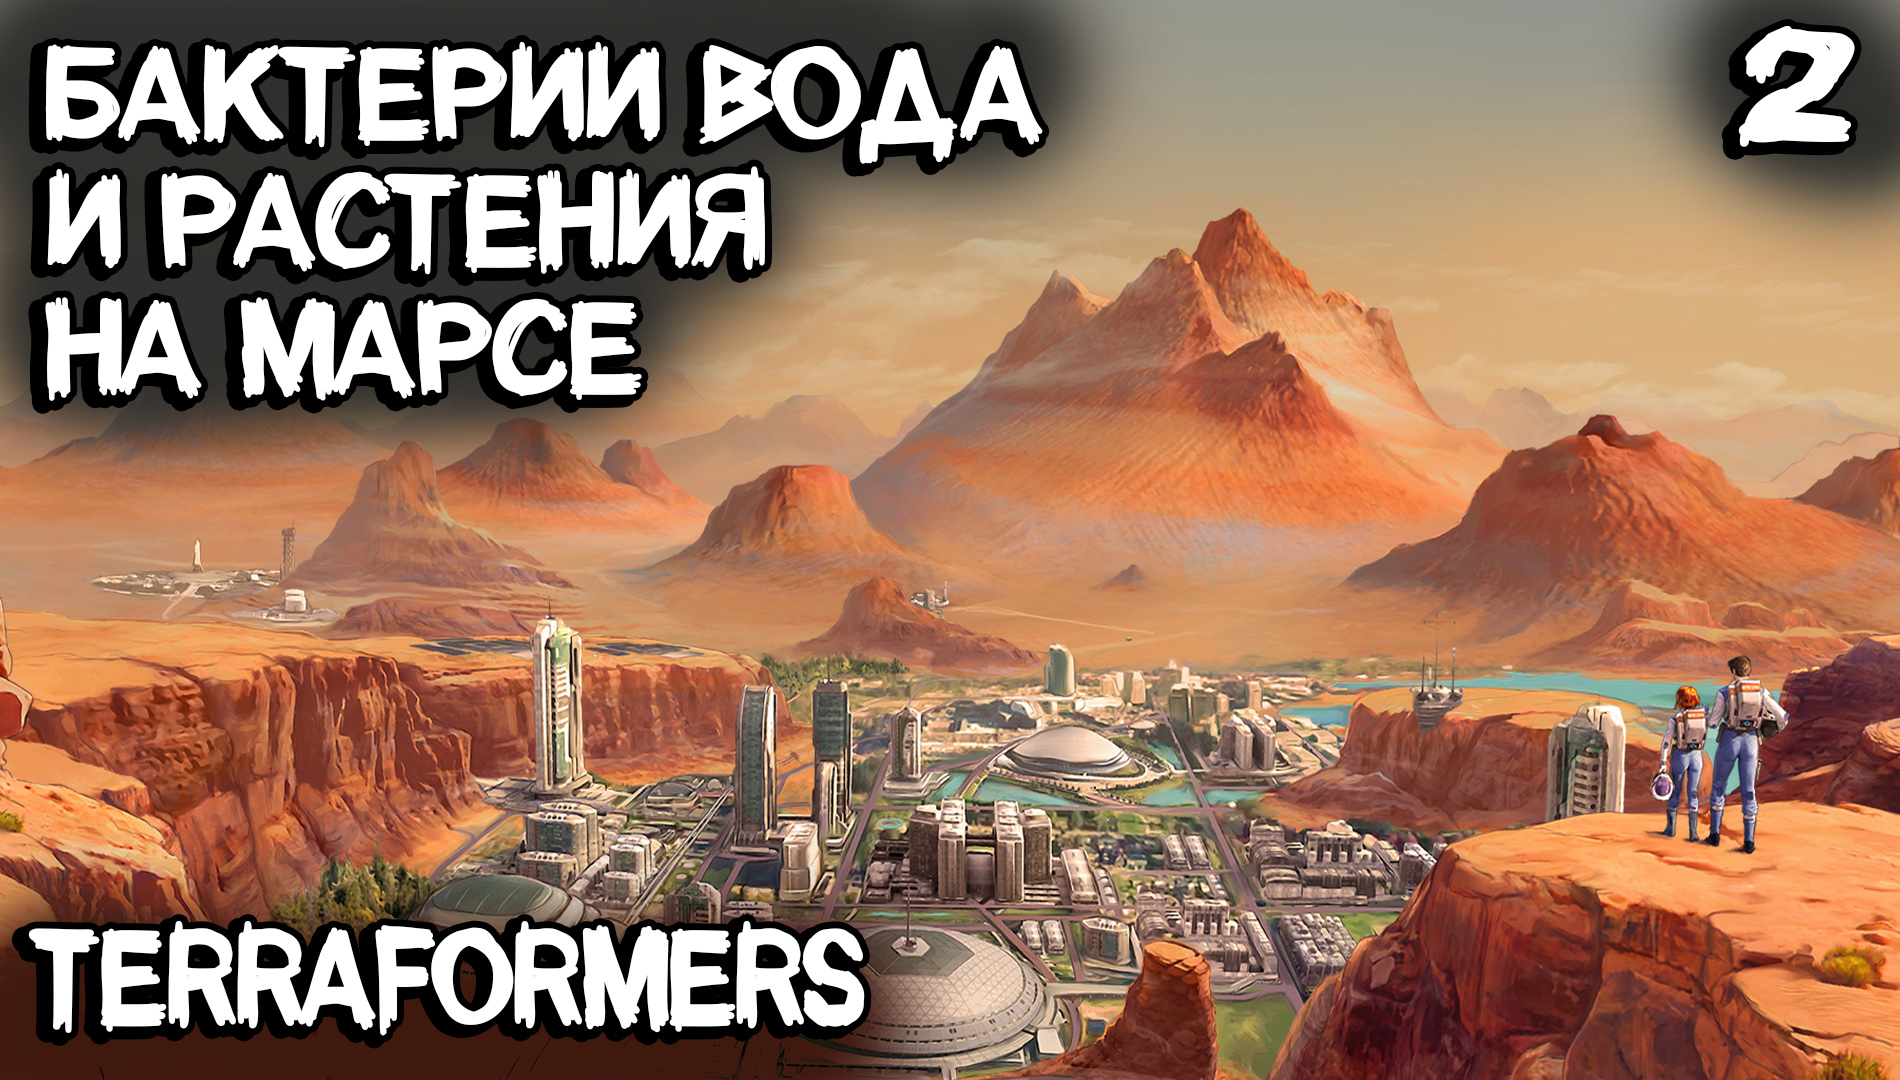 Terraformers - прохождение игры. Первые бактерии, растения и океаны на поверхности Марса #2